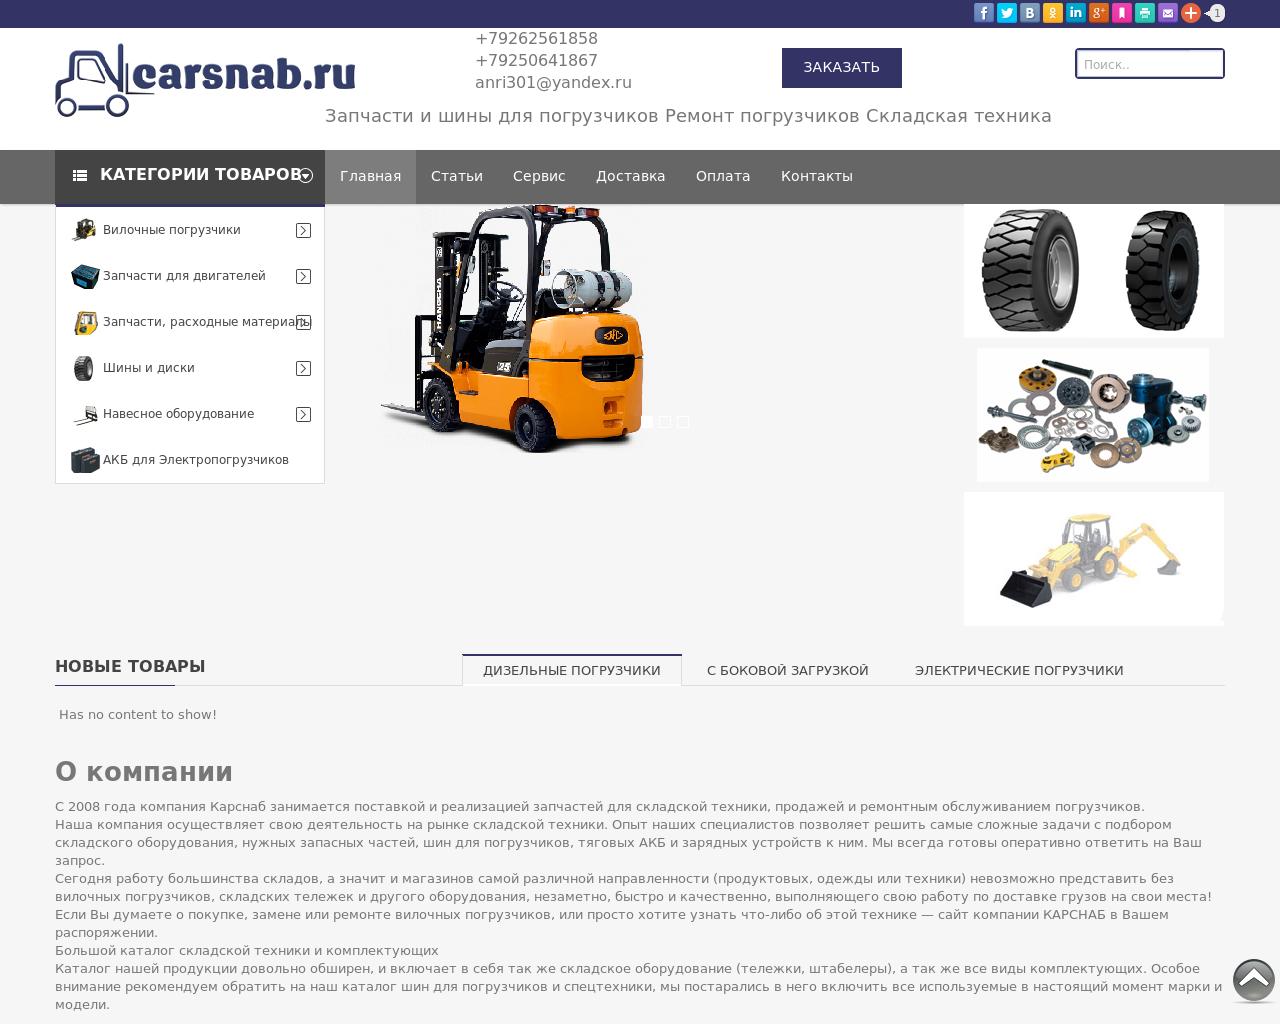 Изображение сайта carsnab.ru в разрешении 1280x1024